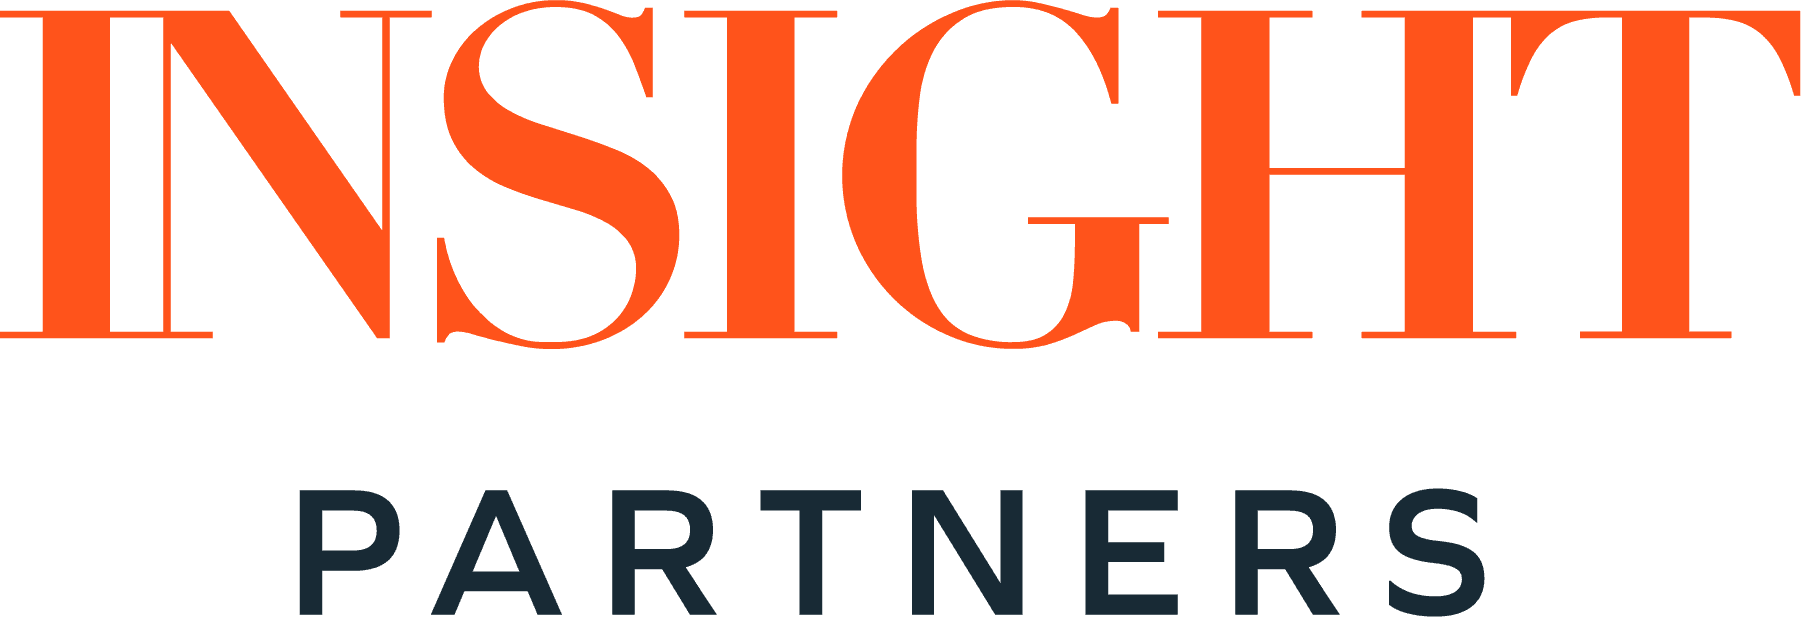 Insight partners logo